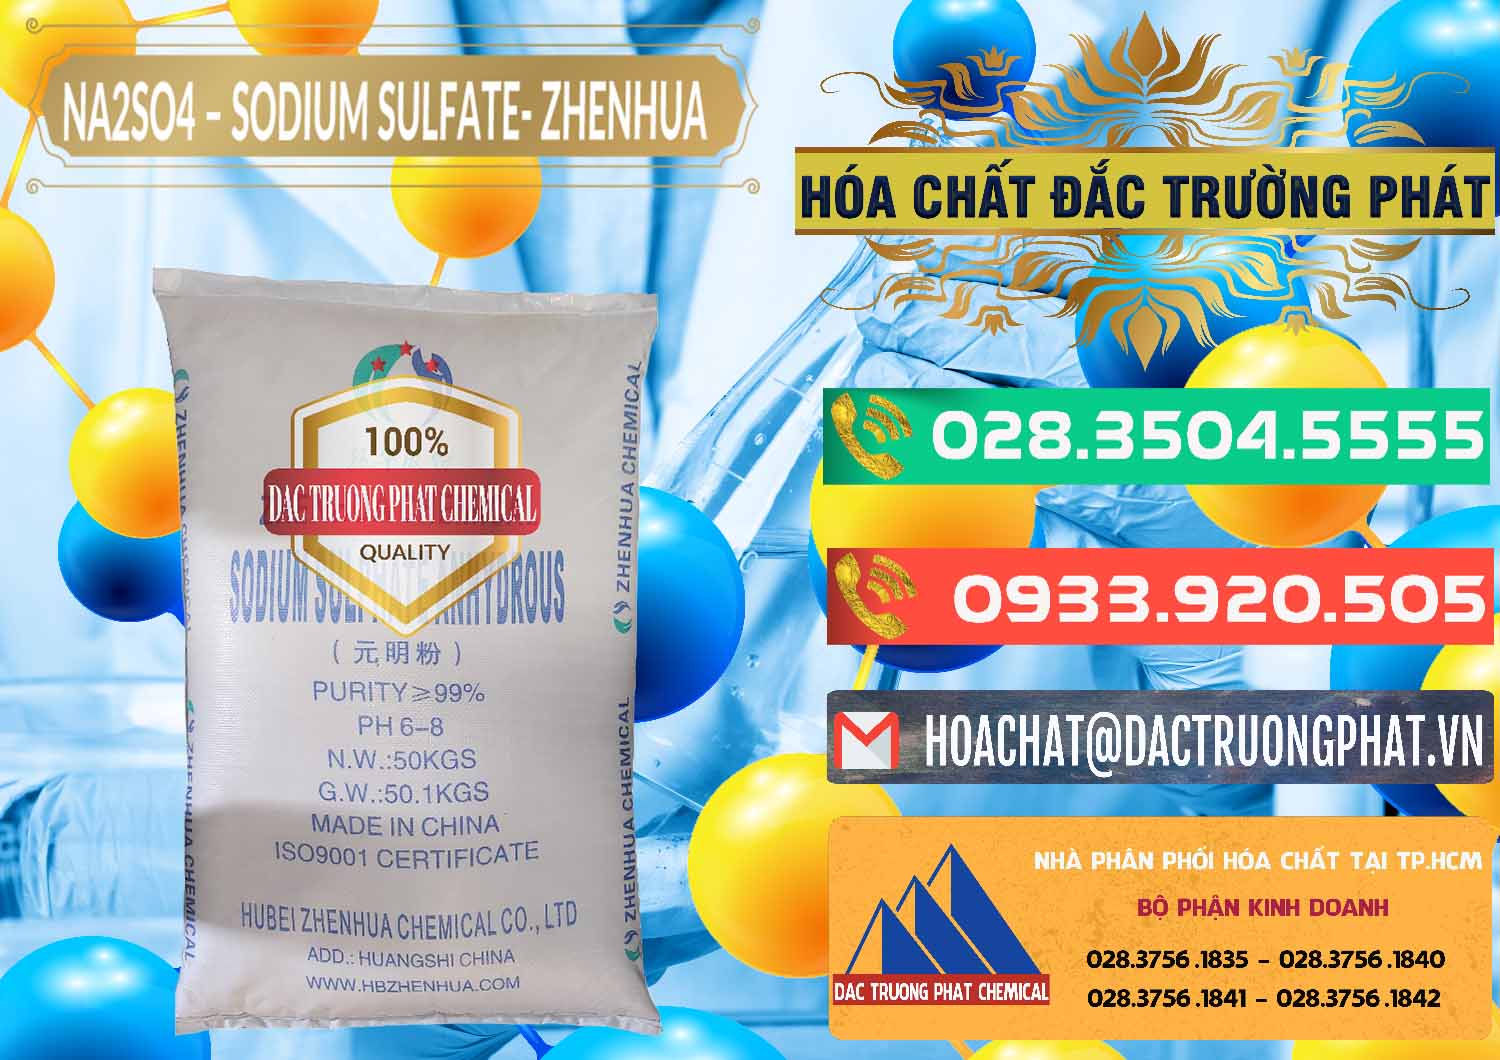 Chuyên bán - cung ứng Sodium Sulphate - Muối Sunfat Na2SO4 Zhenhua Trung Quốc China - 0101 - Đơn vị chuyên phân phối - bán hóa chất tại TP.HCM - congtyhoachat.com.vn